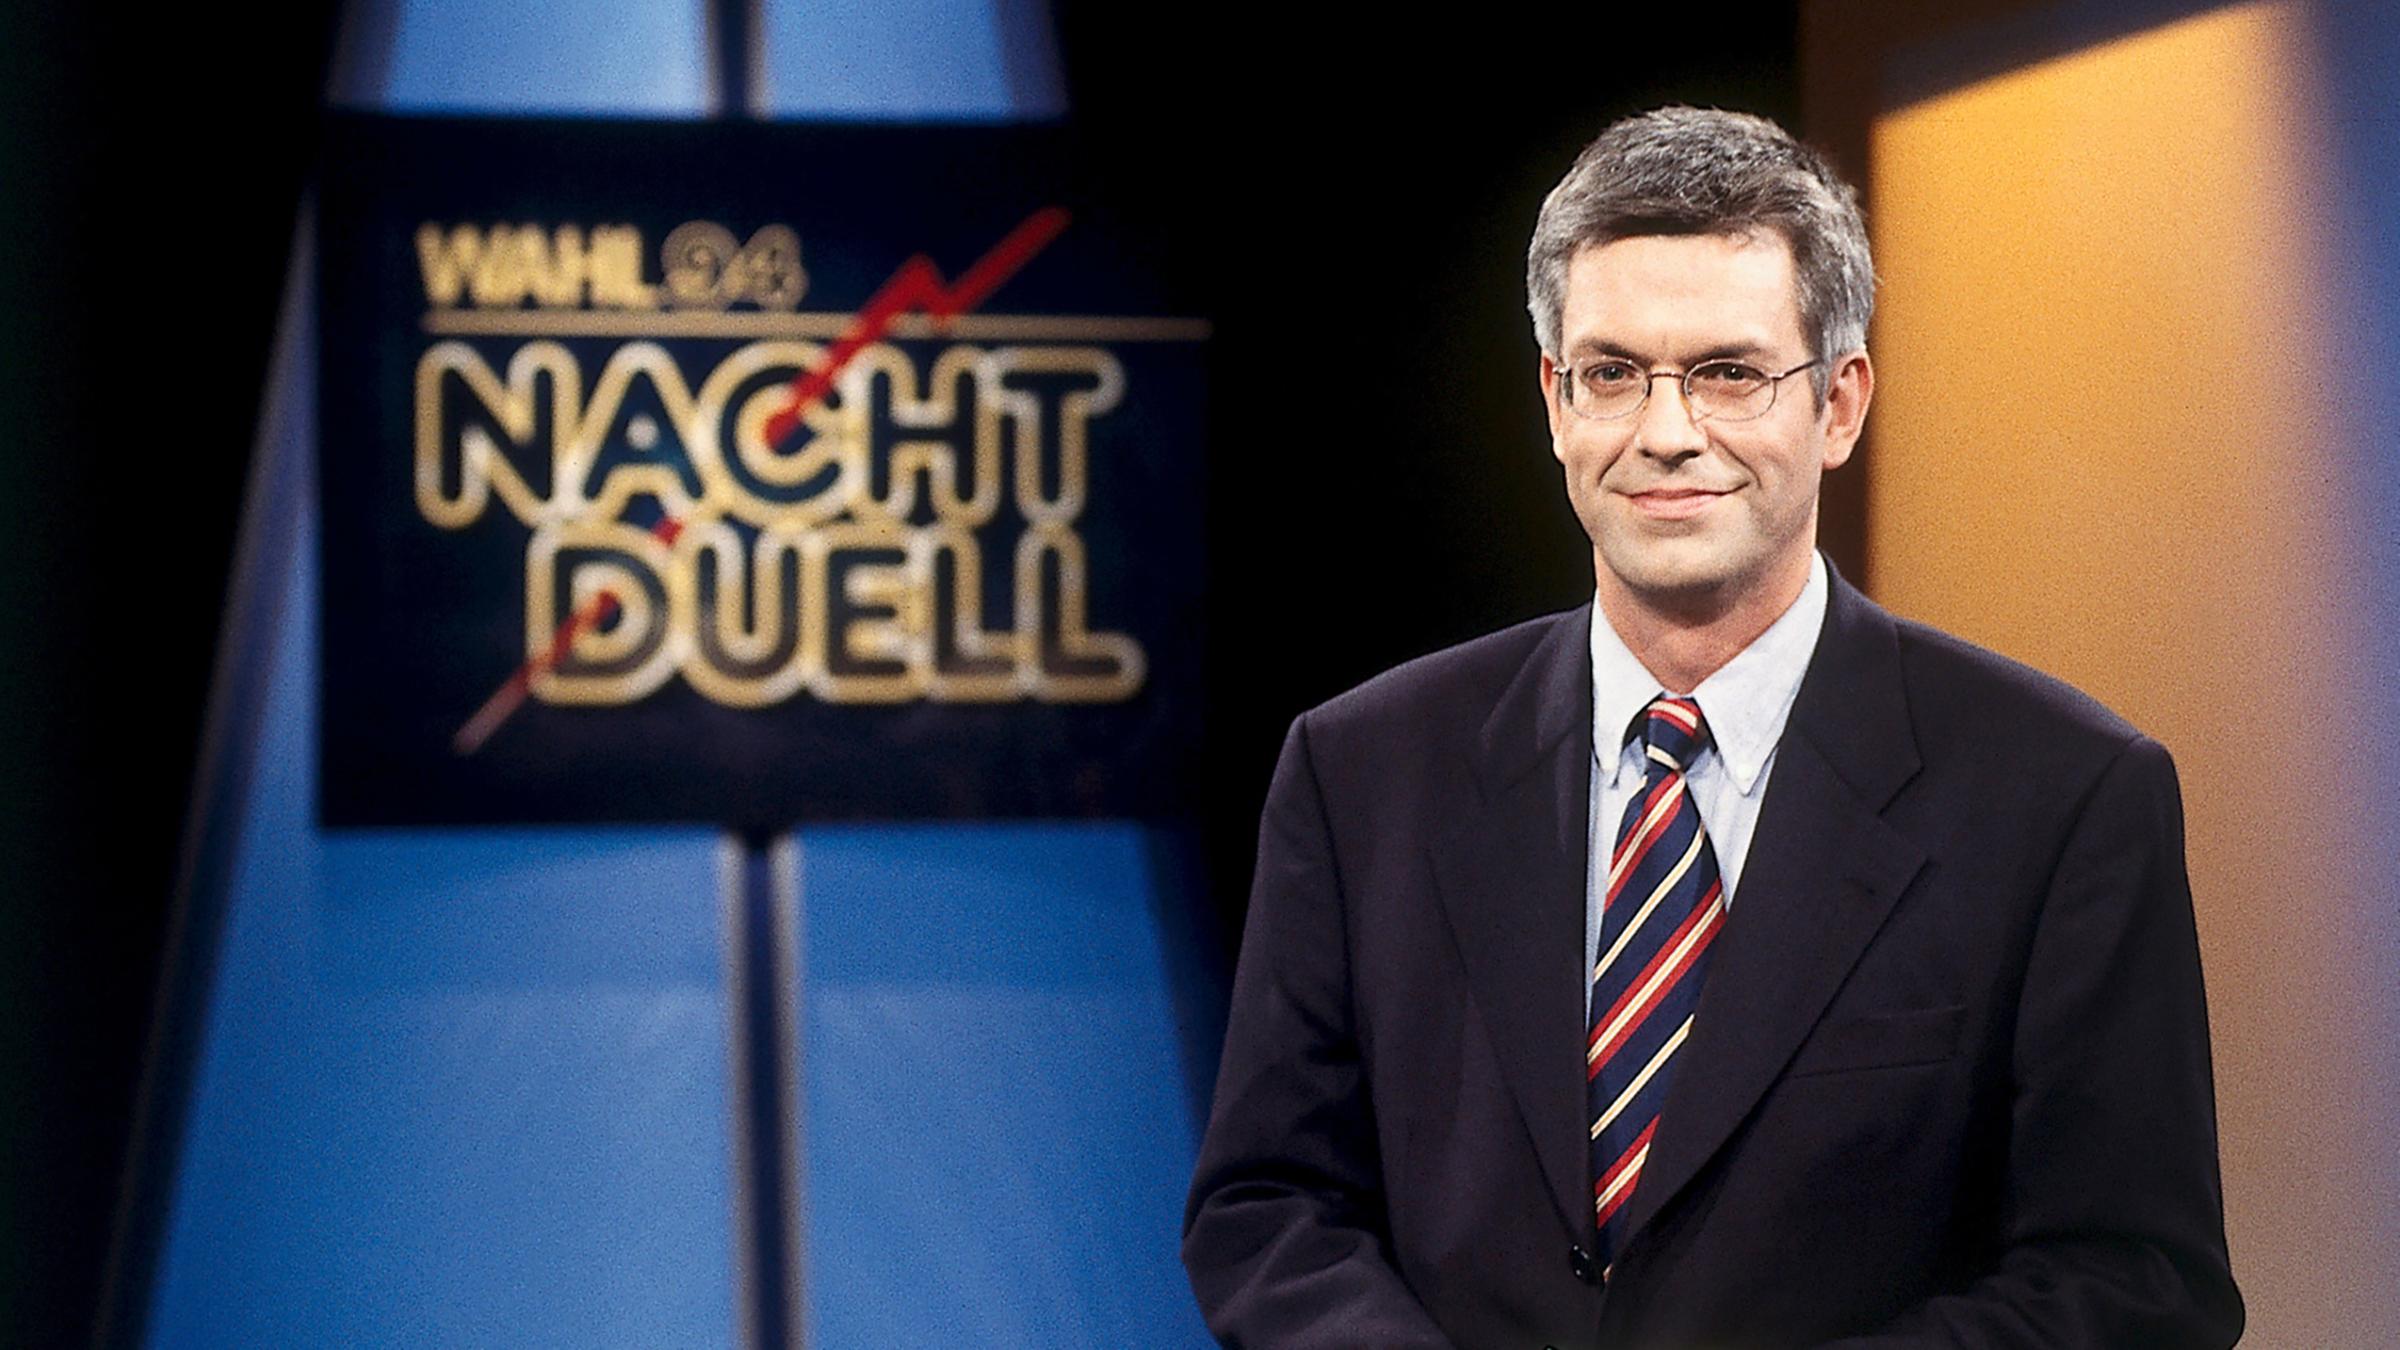 1994: Thomas Bellut für die Sendung "Nacht Duell"